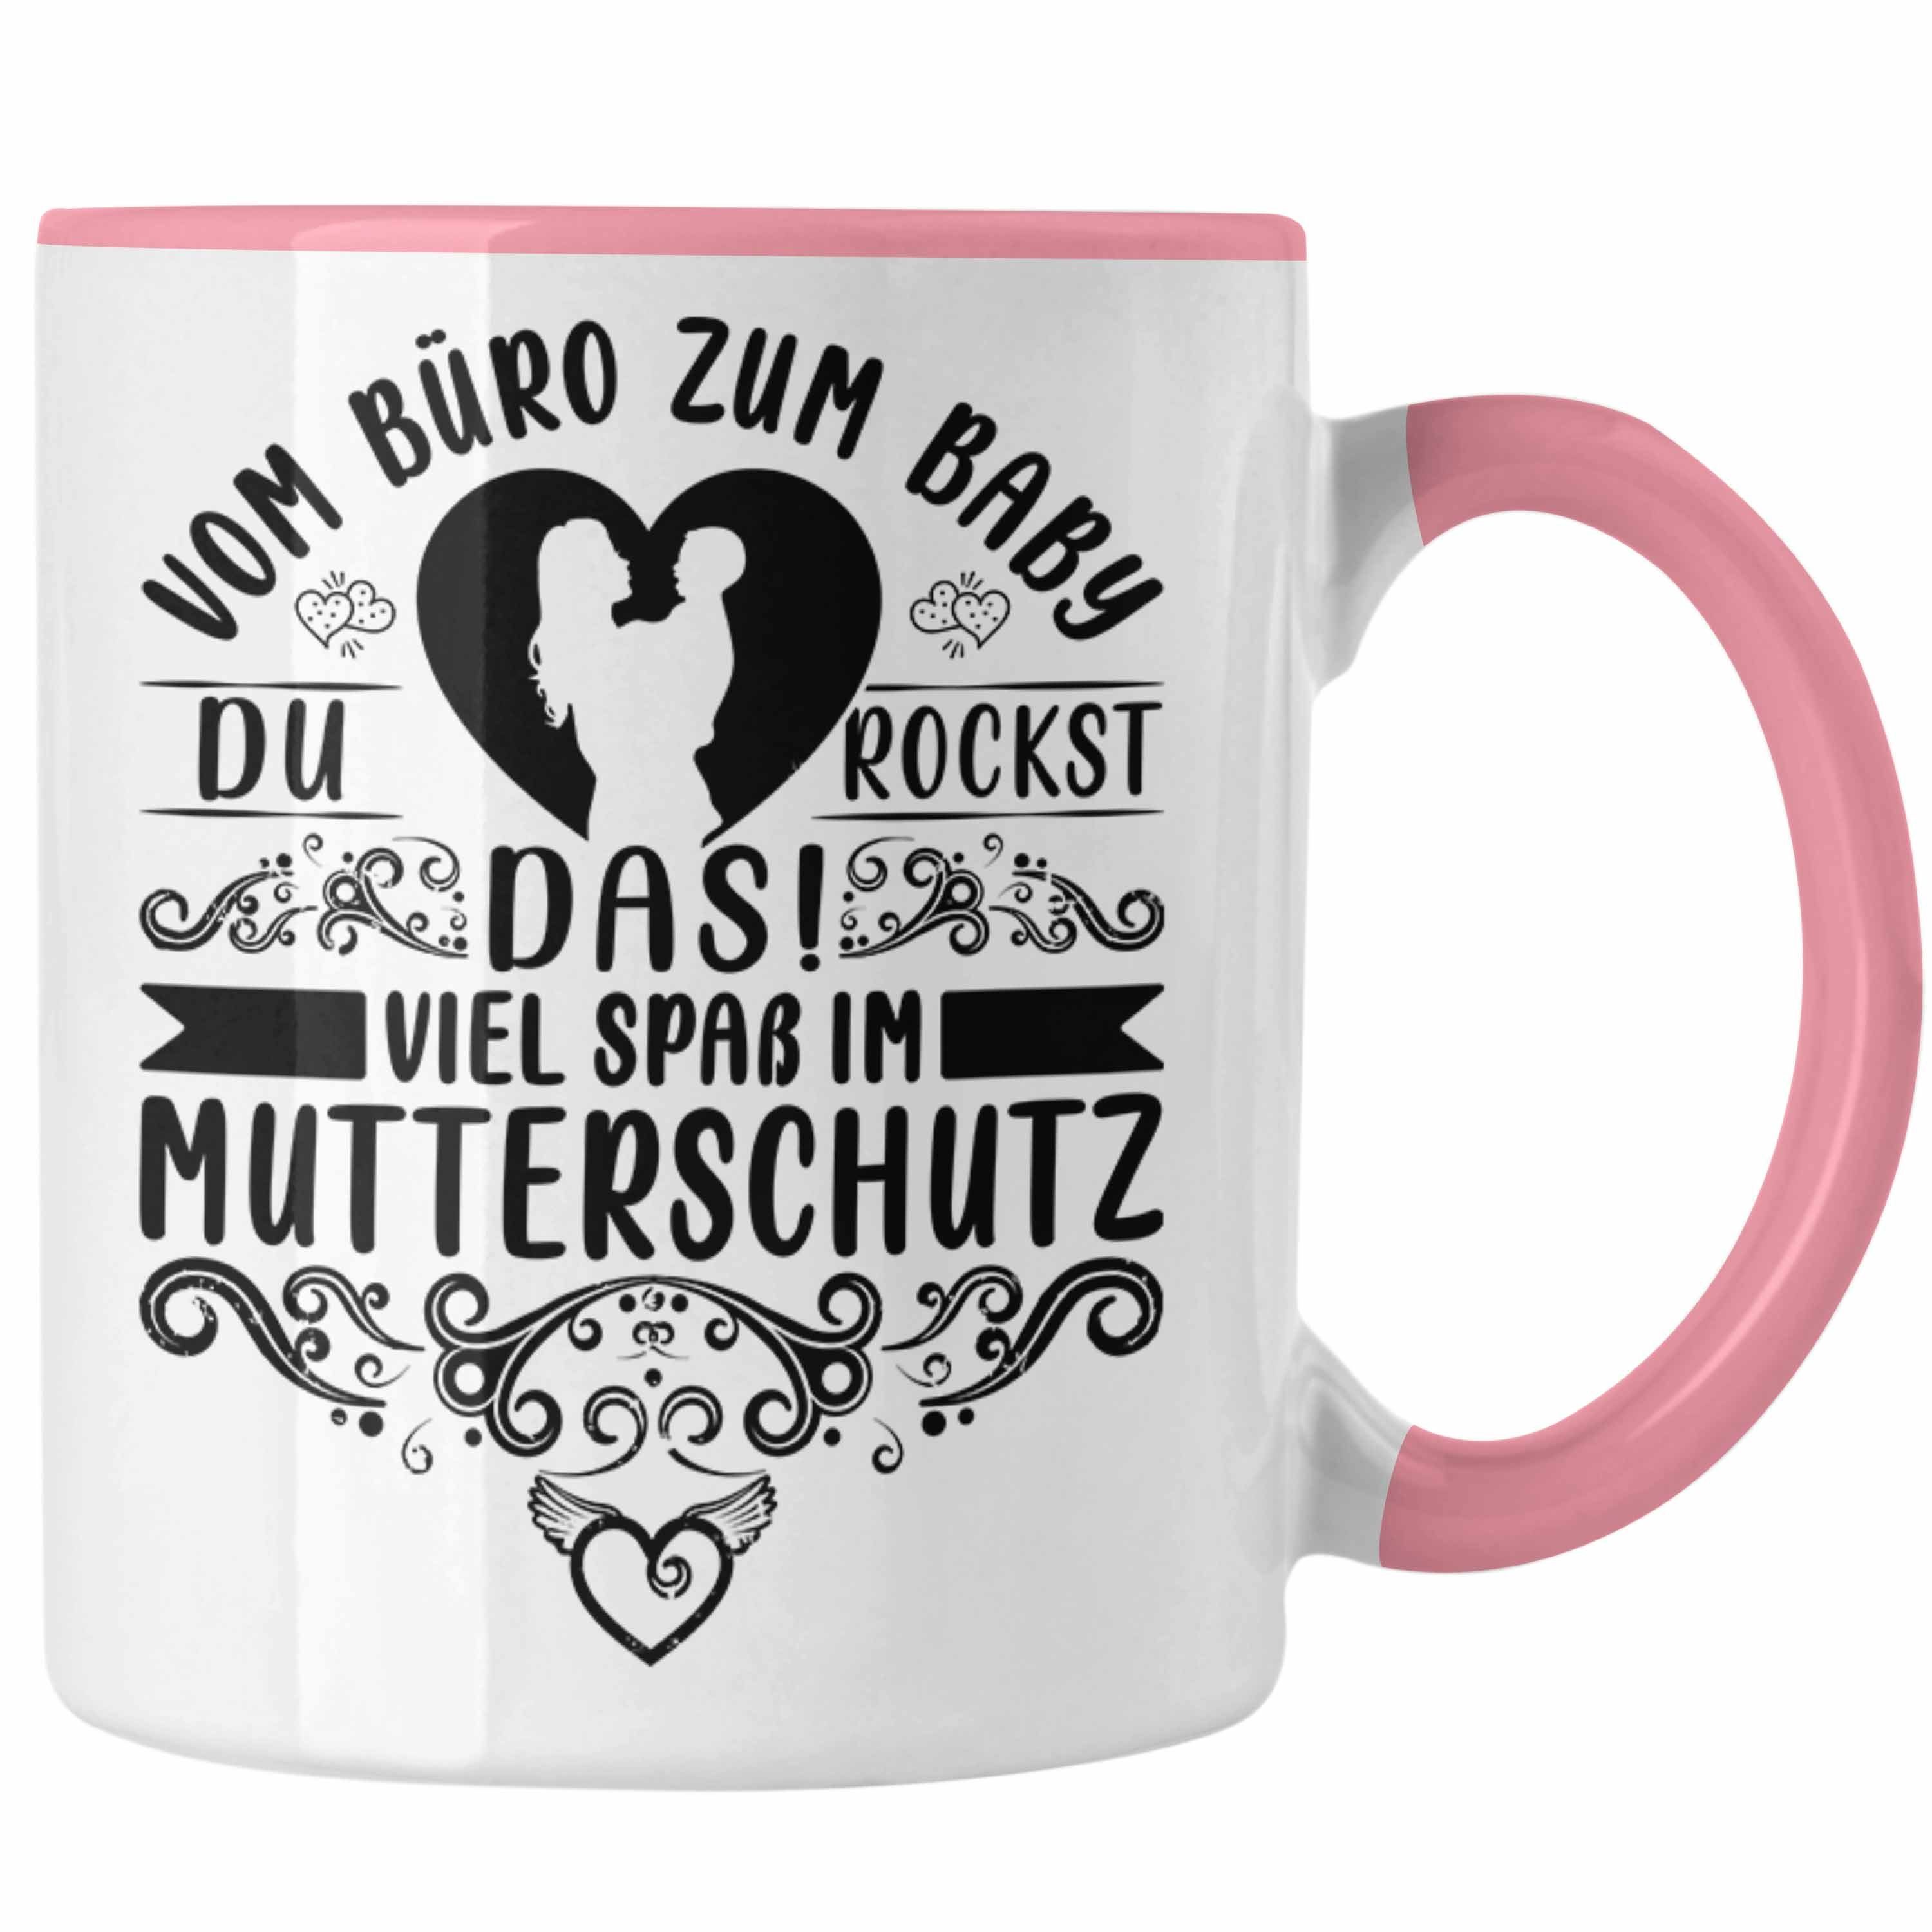 Trendation Tasse Mutterschutz Kollegi Kaffeetasse Geschenk Abschied Mutterschutz Tasse Rosa